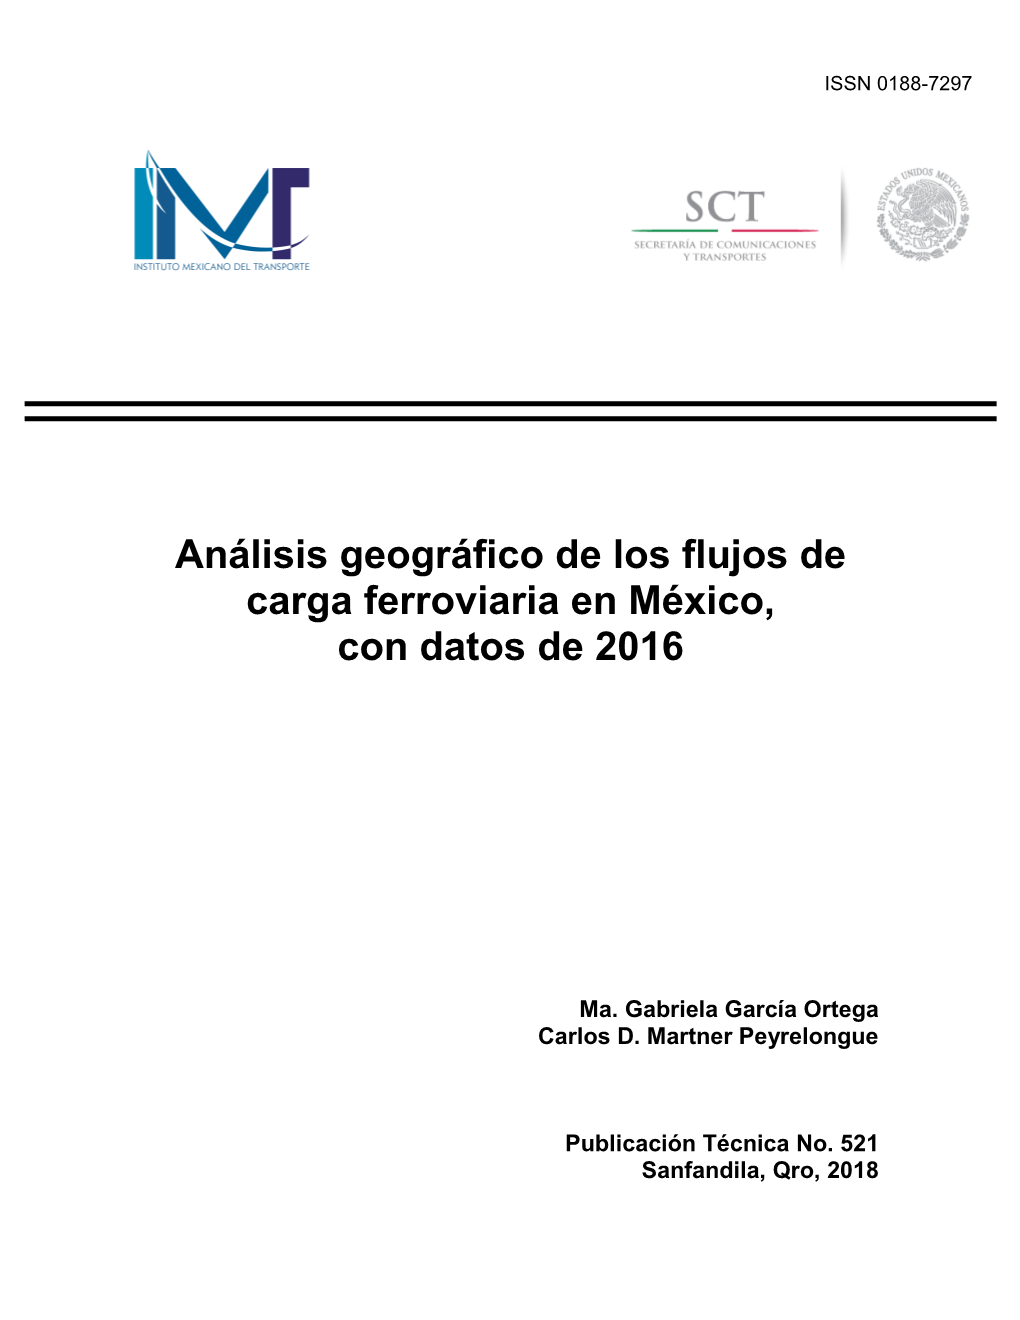 Análisis Geográfico De Los Flujos De Carga Ferroviaria En México, Con Datos De 2016